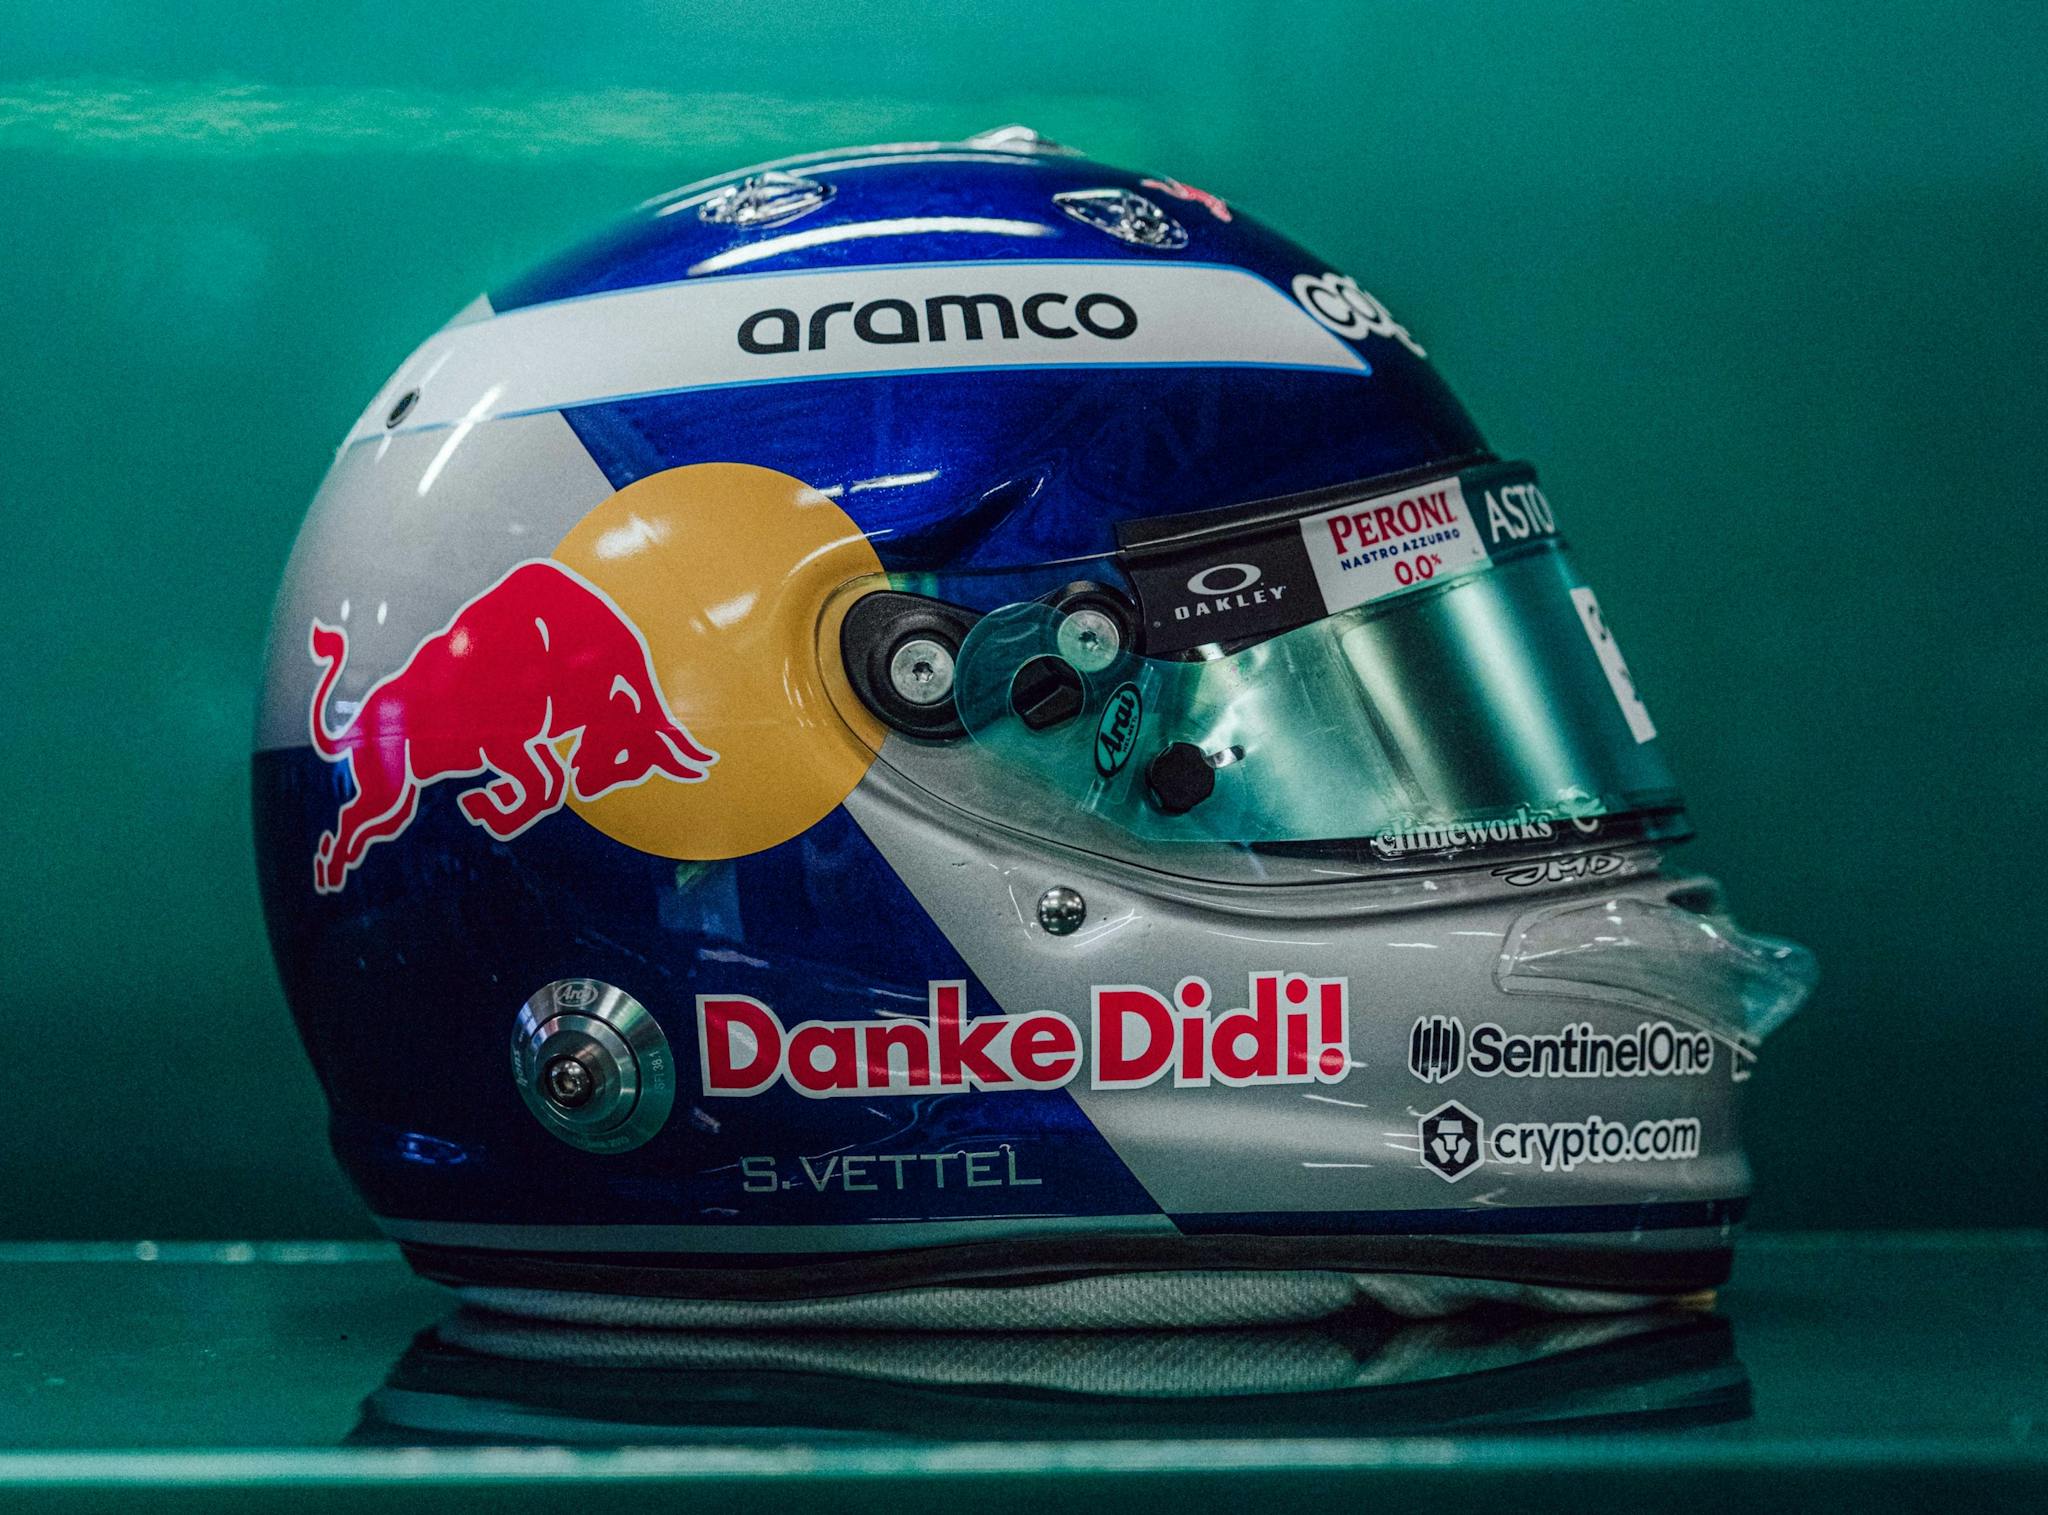 Vettel uczcił Mateschitza wyjątkowym malowaniem kasku